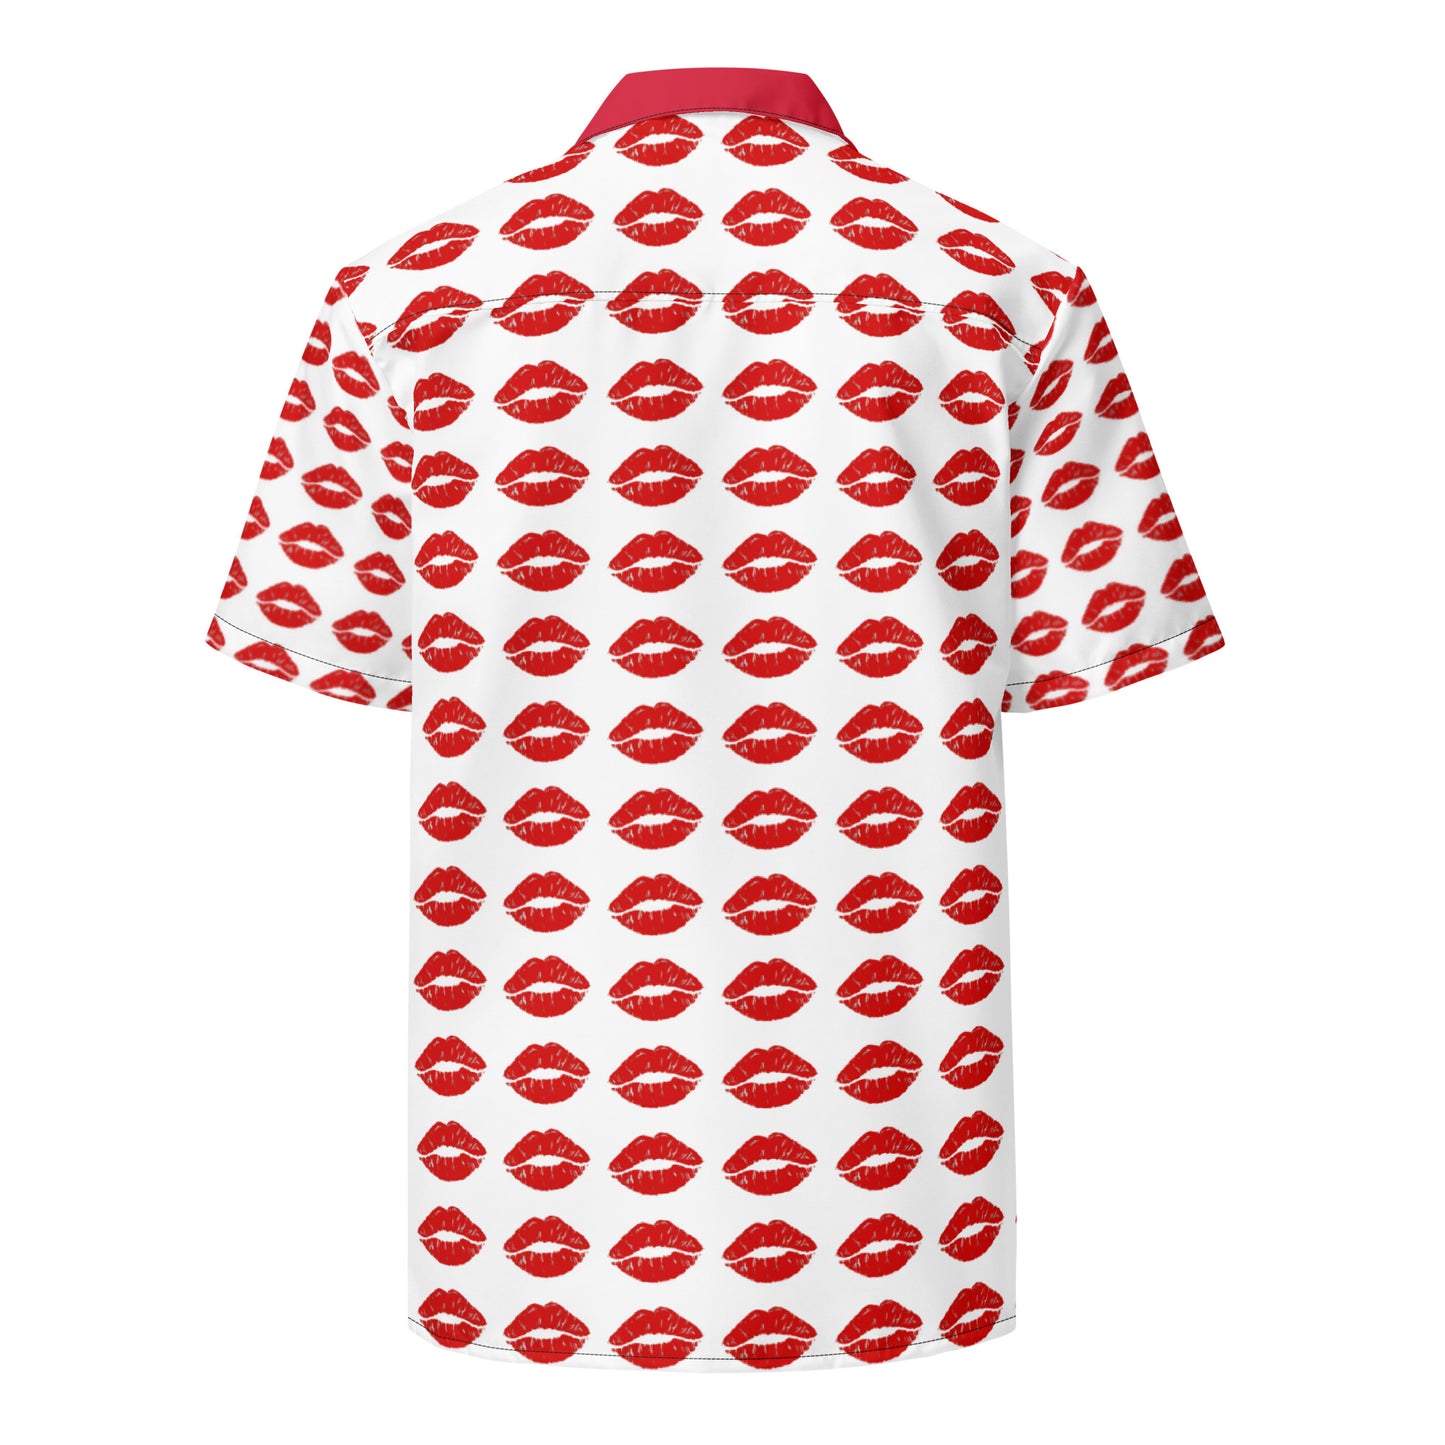 Unisex button shirt lobonewyork